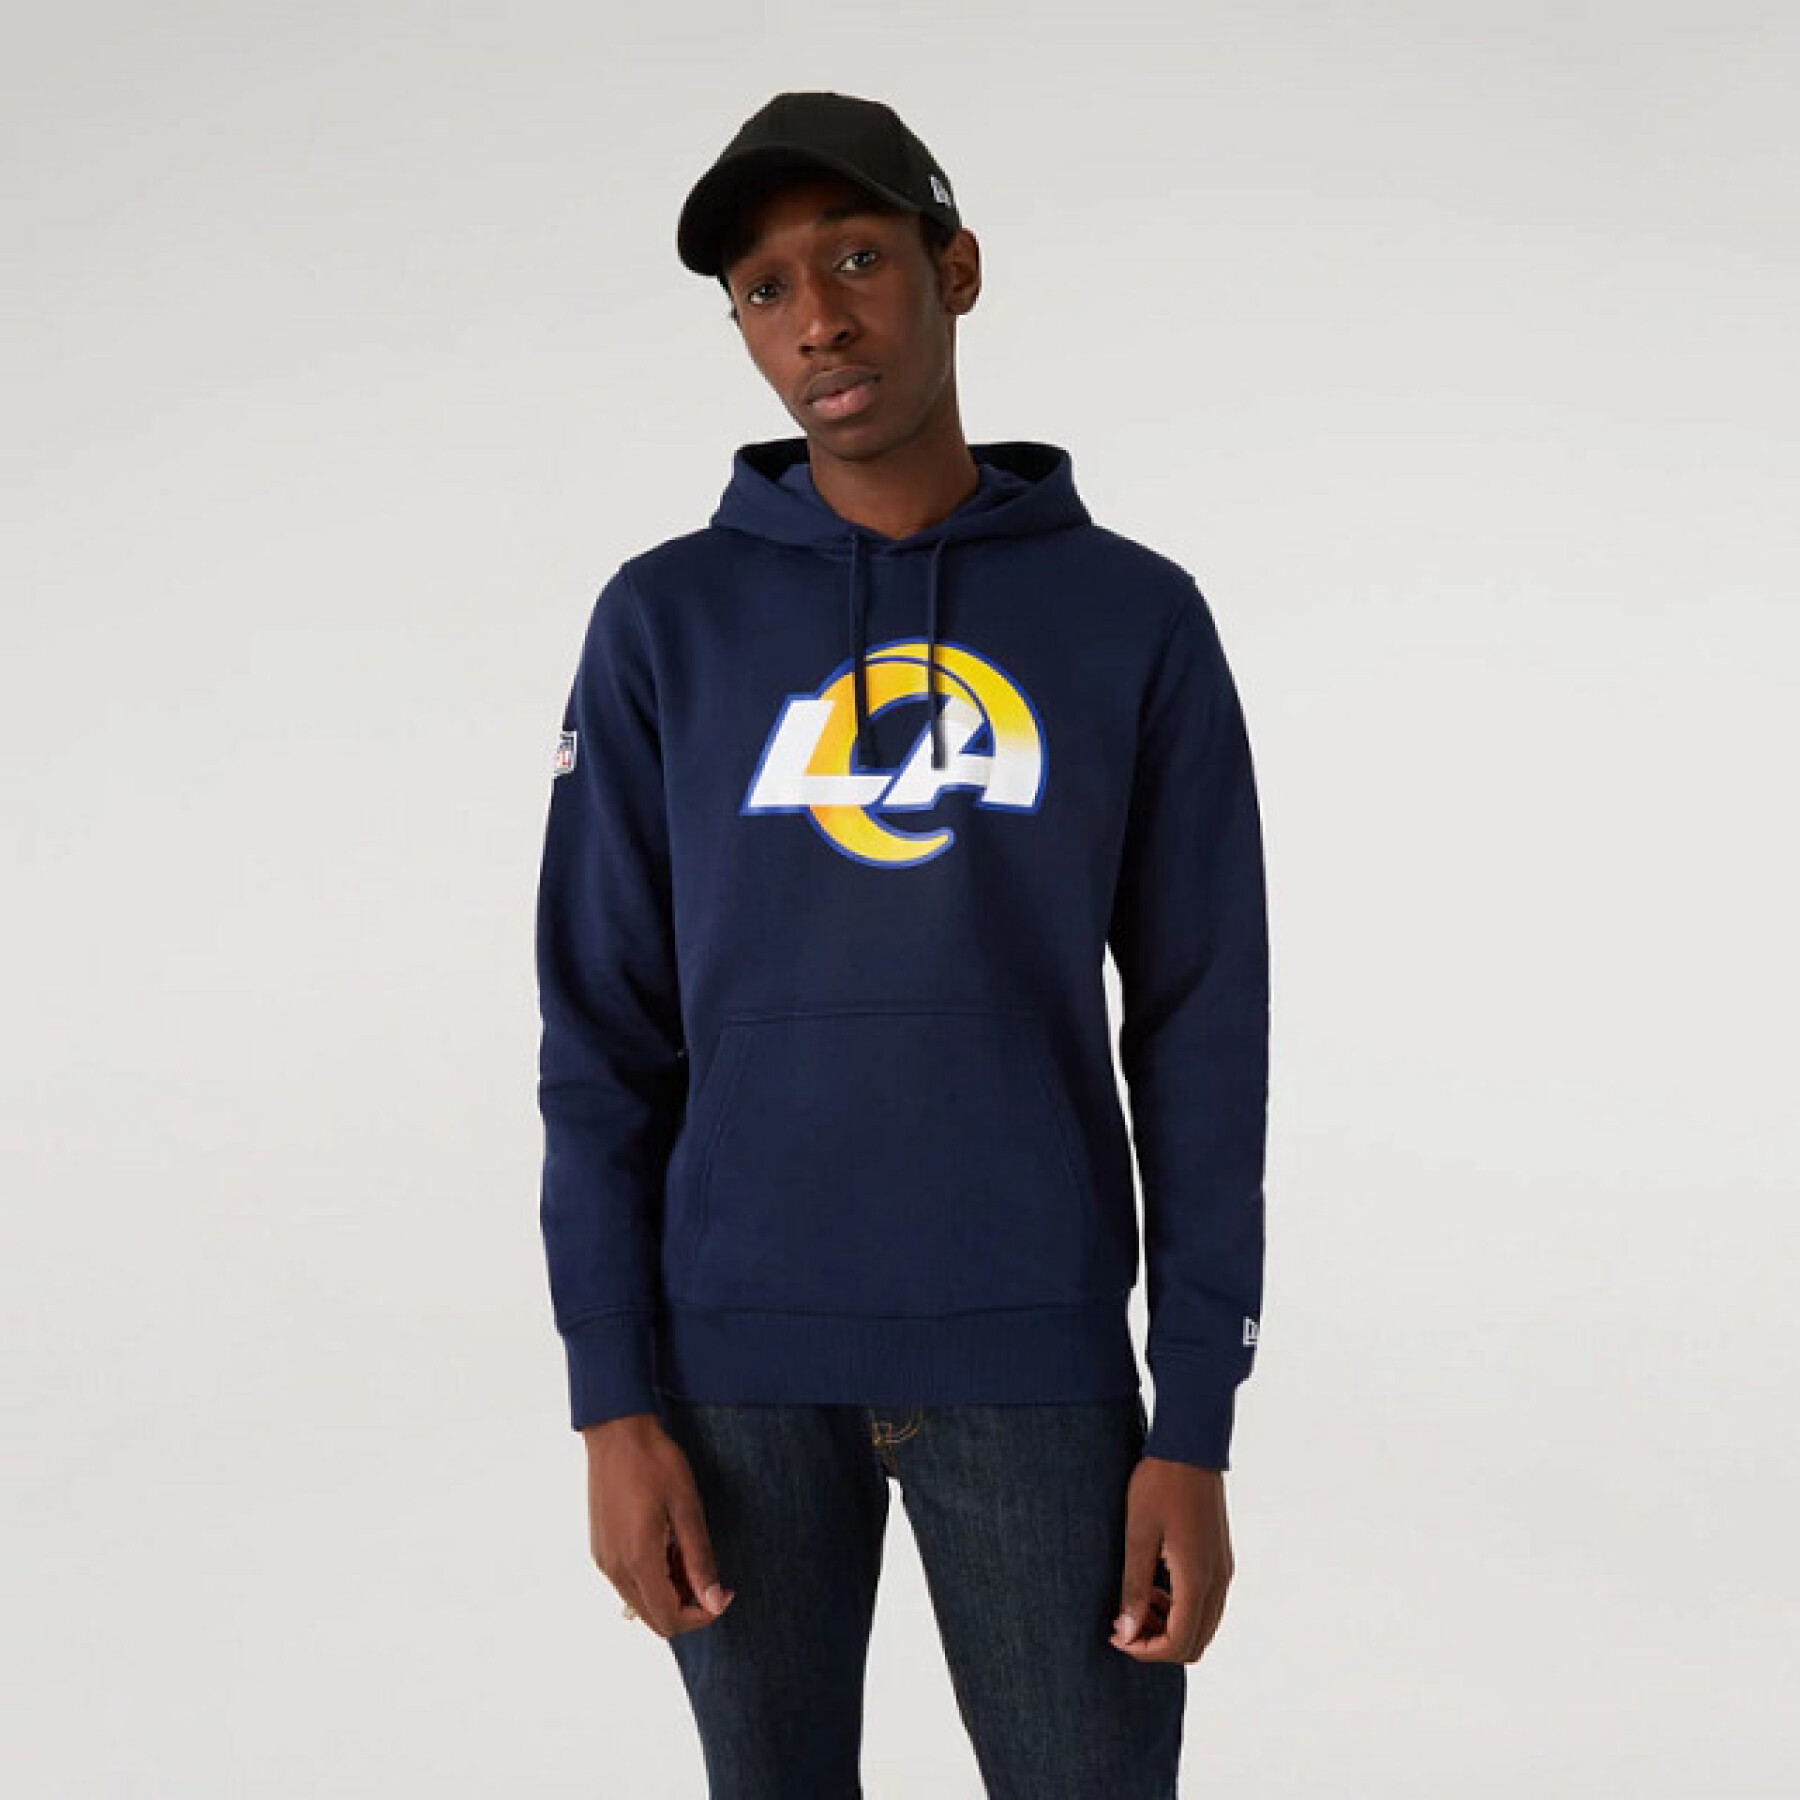 Hooded sweatshirt Los Angeles Rams NFL